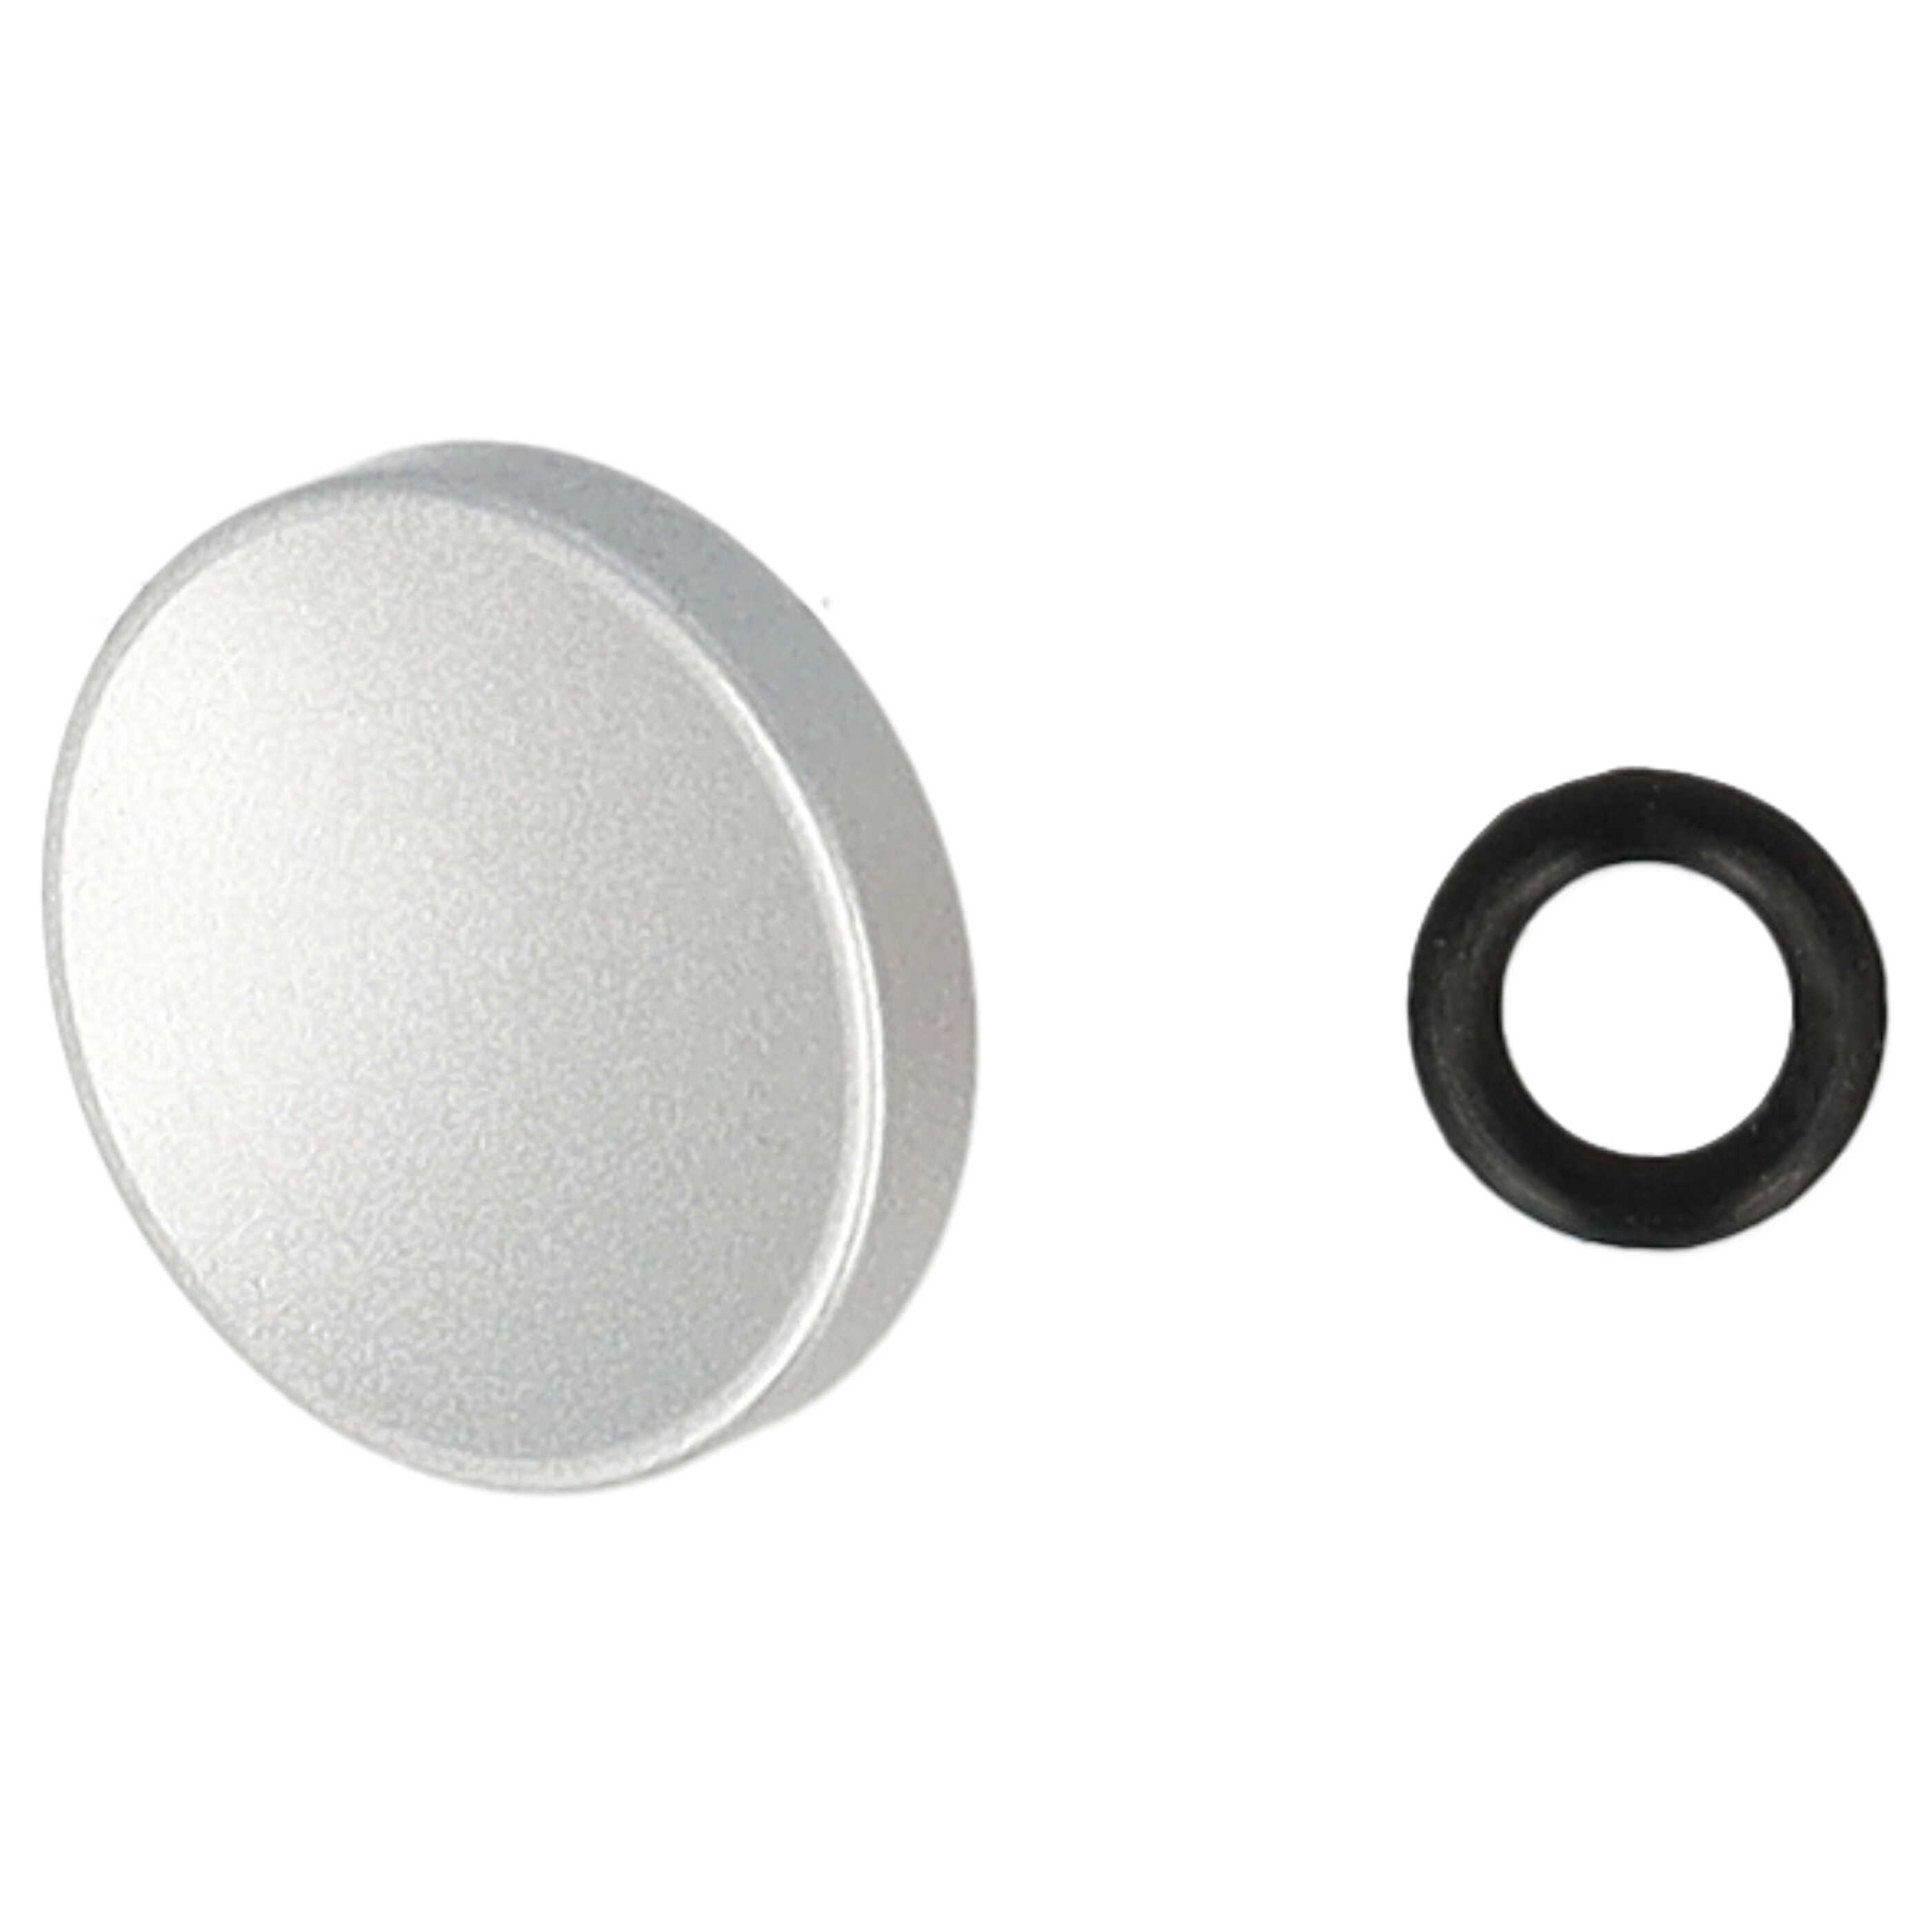 Release Button suitable for X-E1 FujifilmCamera etc. - Metal, Silver